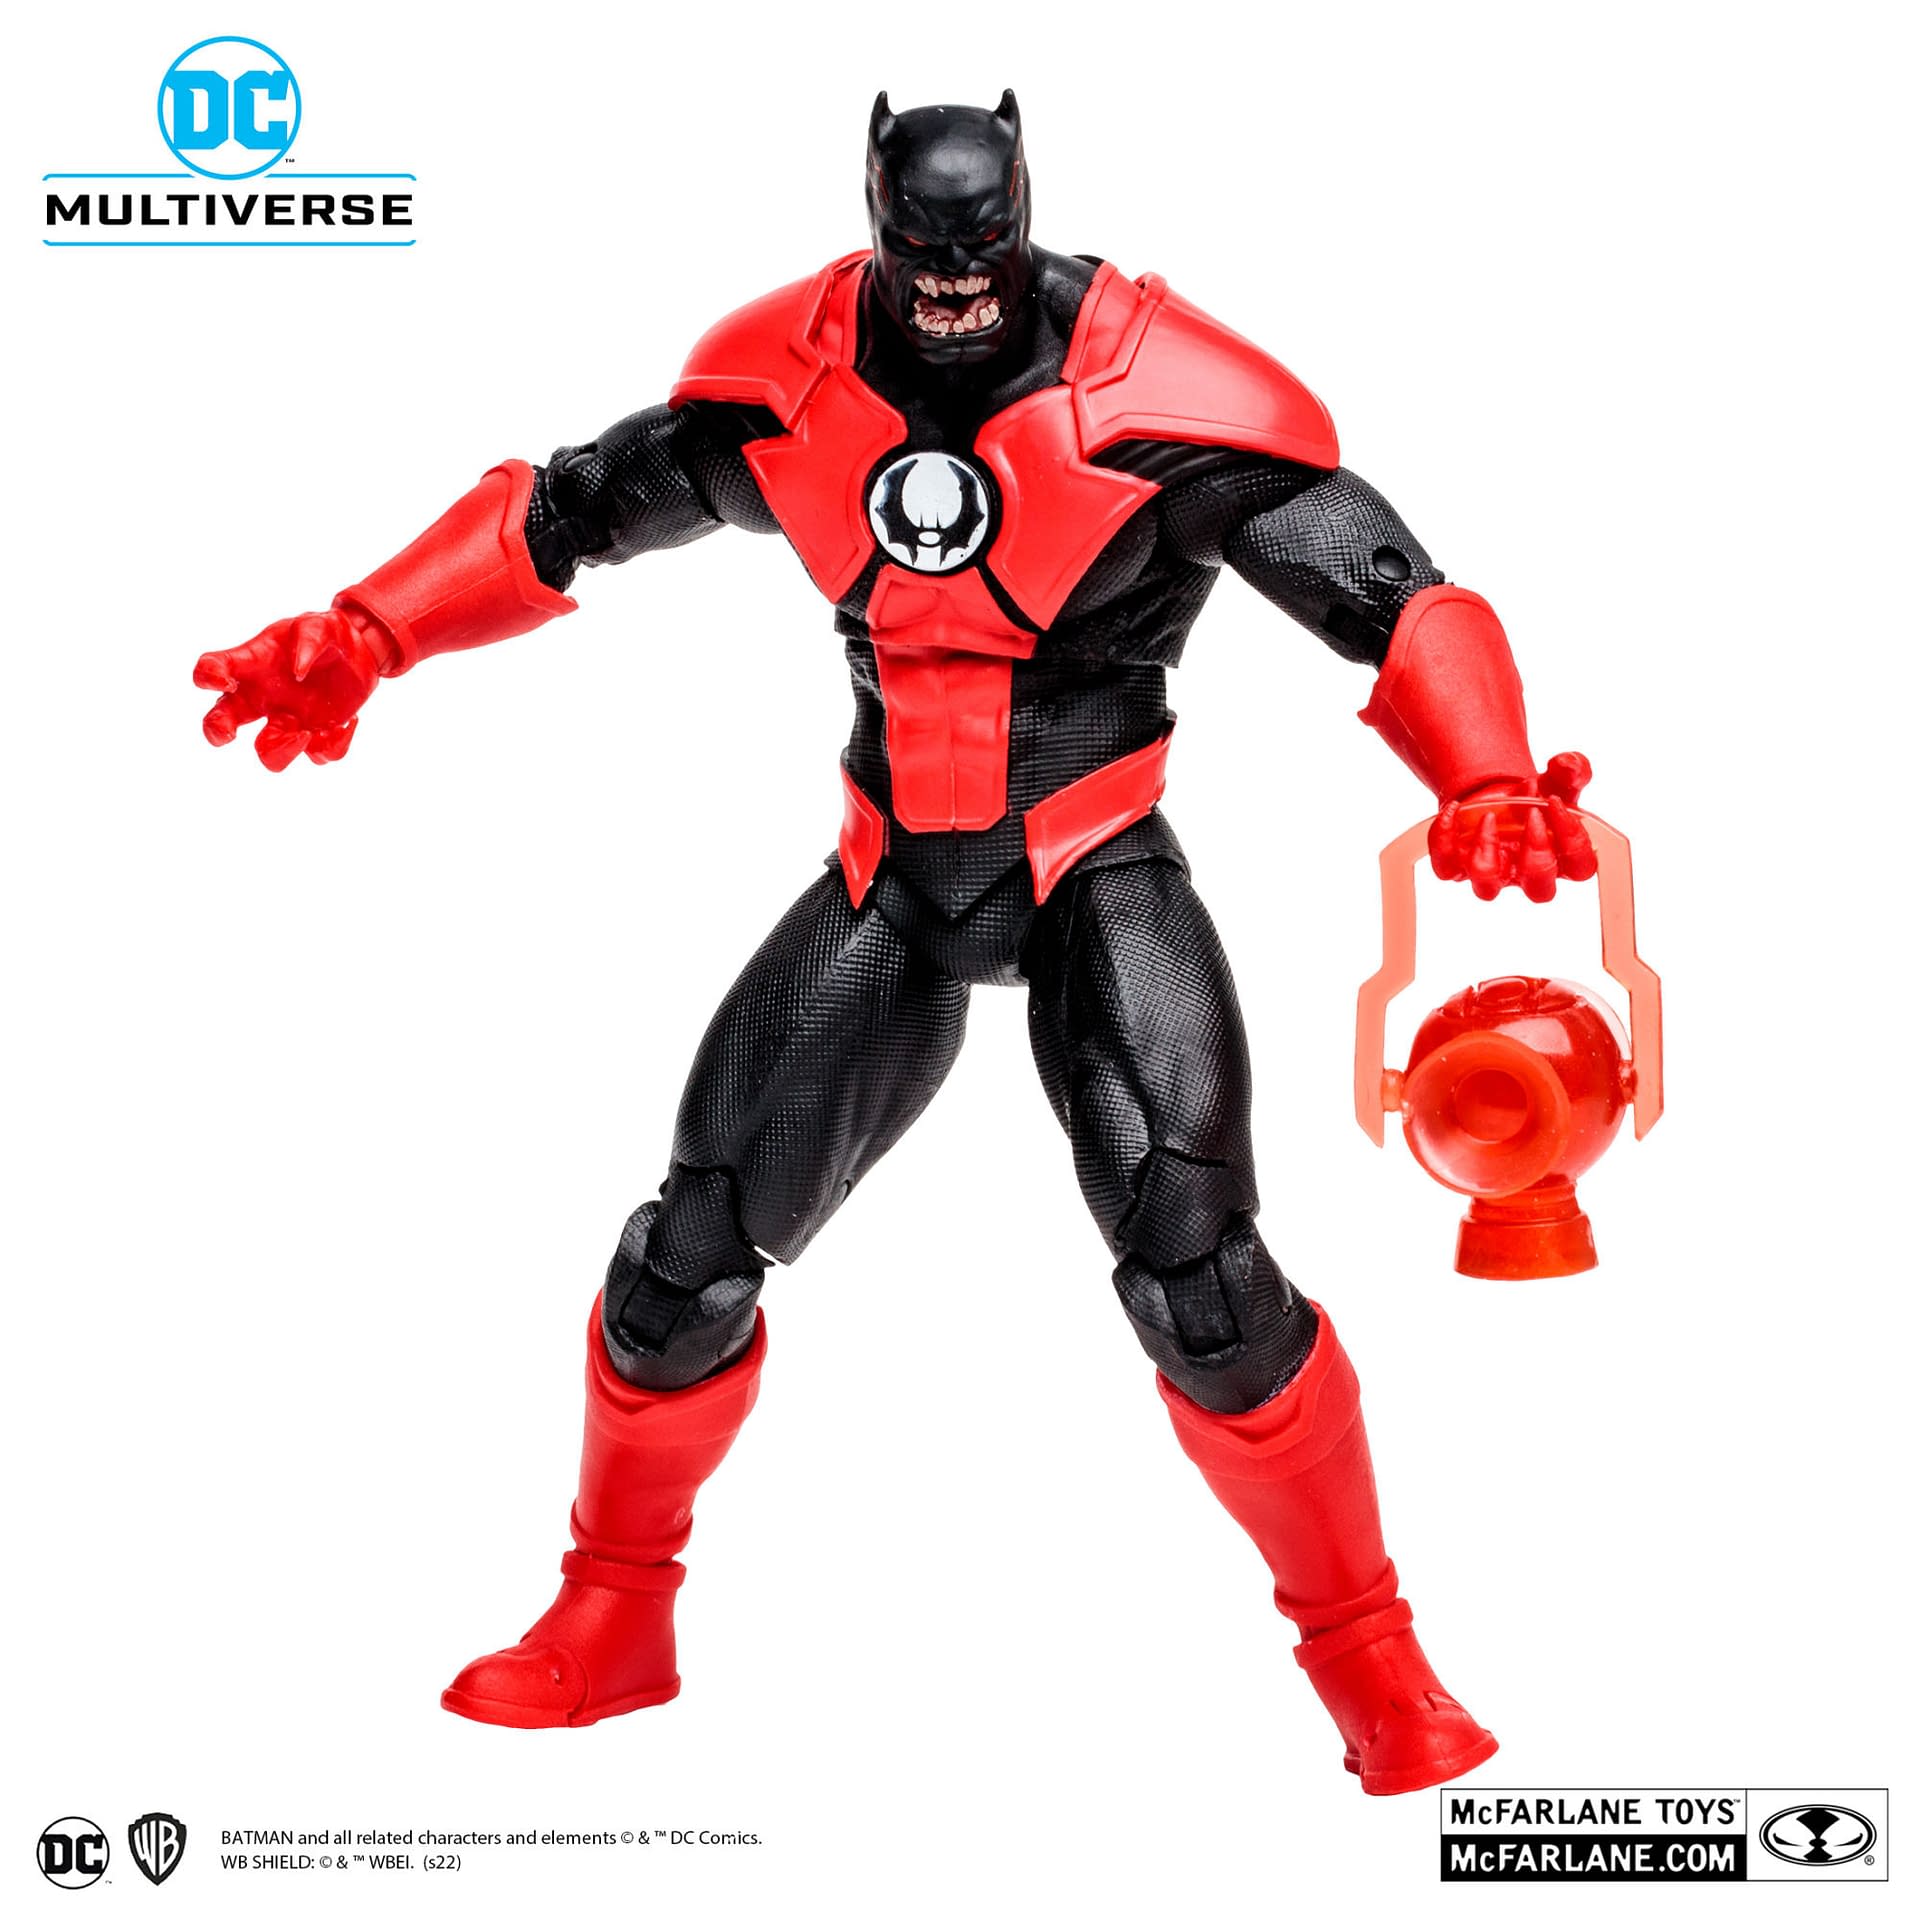 DC Comics Dark Multiverse Returns with McFarlane Toys Batrocitus 